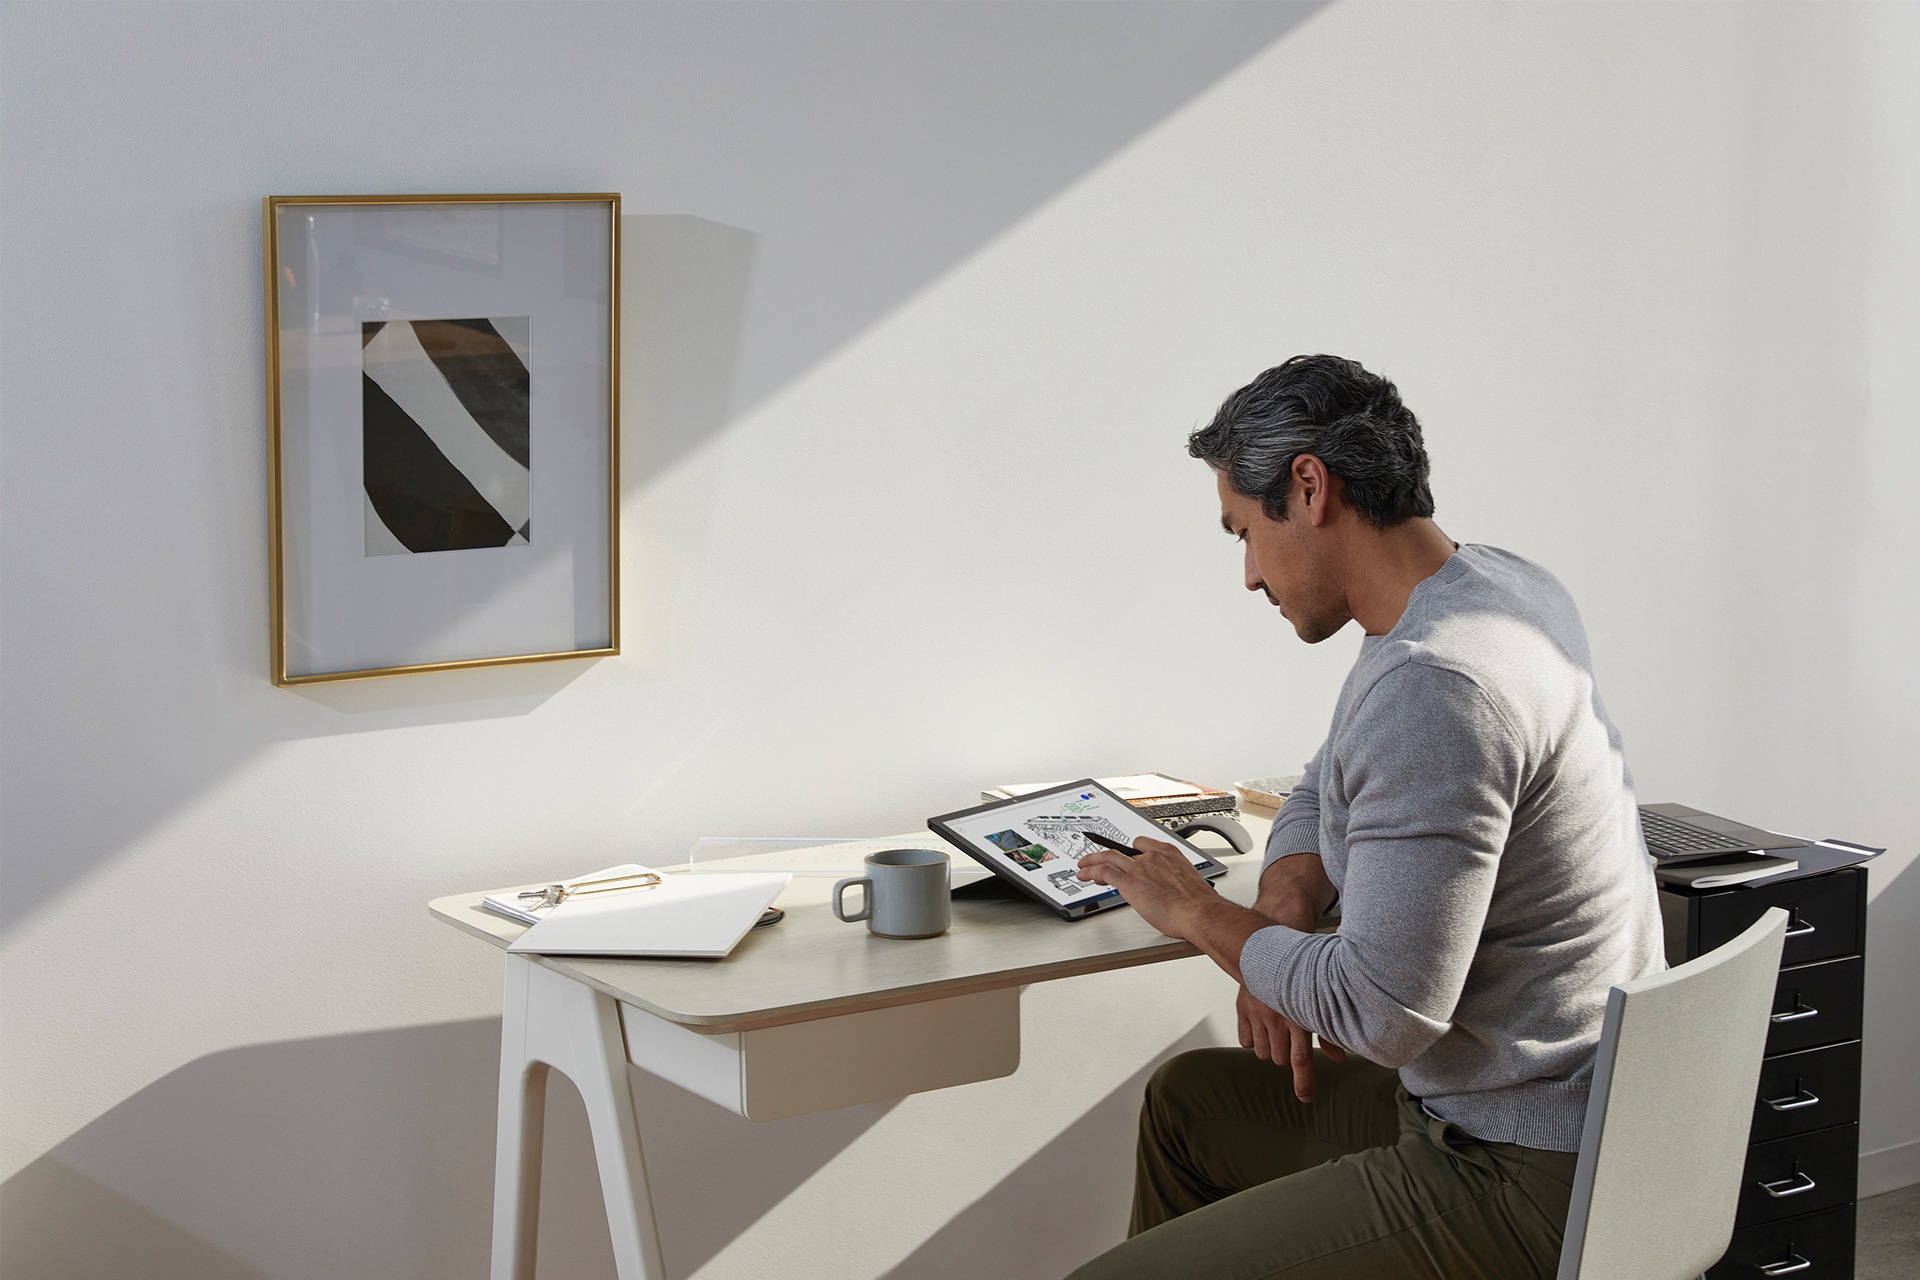 Surface-tollat és Surface Pro készüléket használó, otthonról dolgozó személy